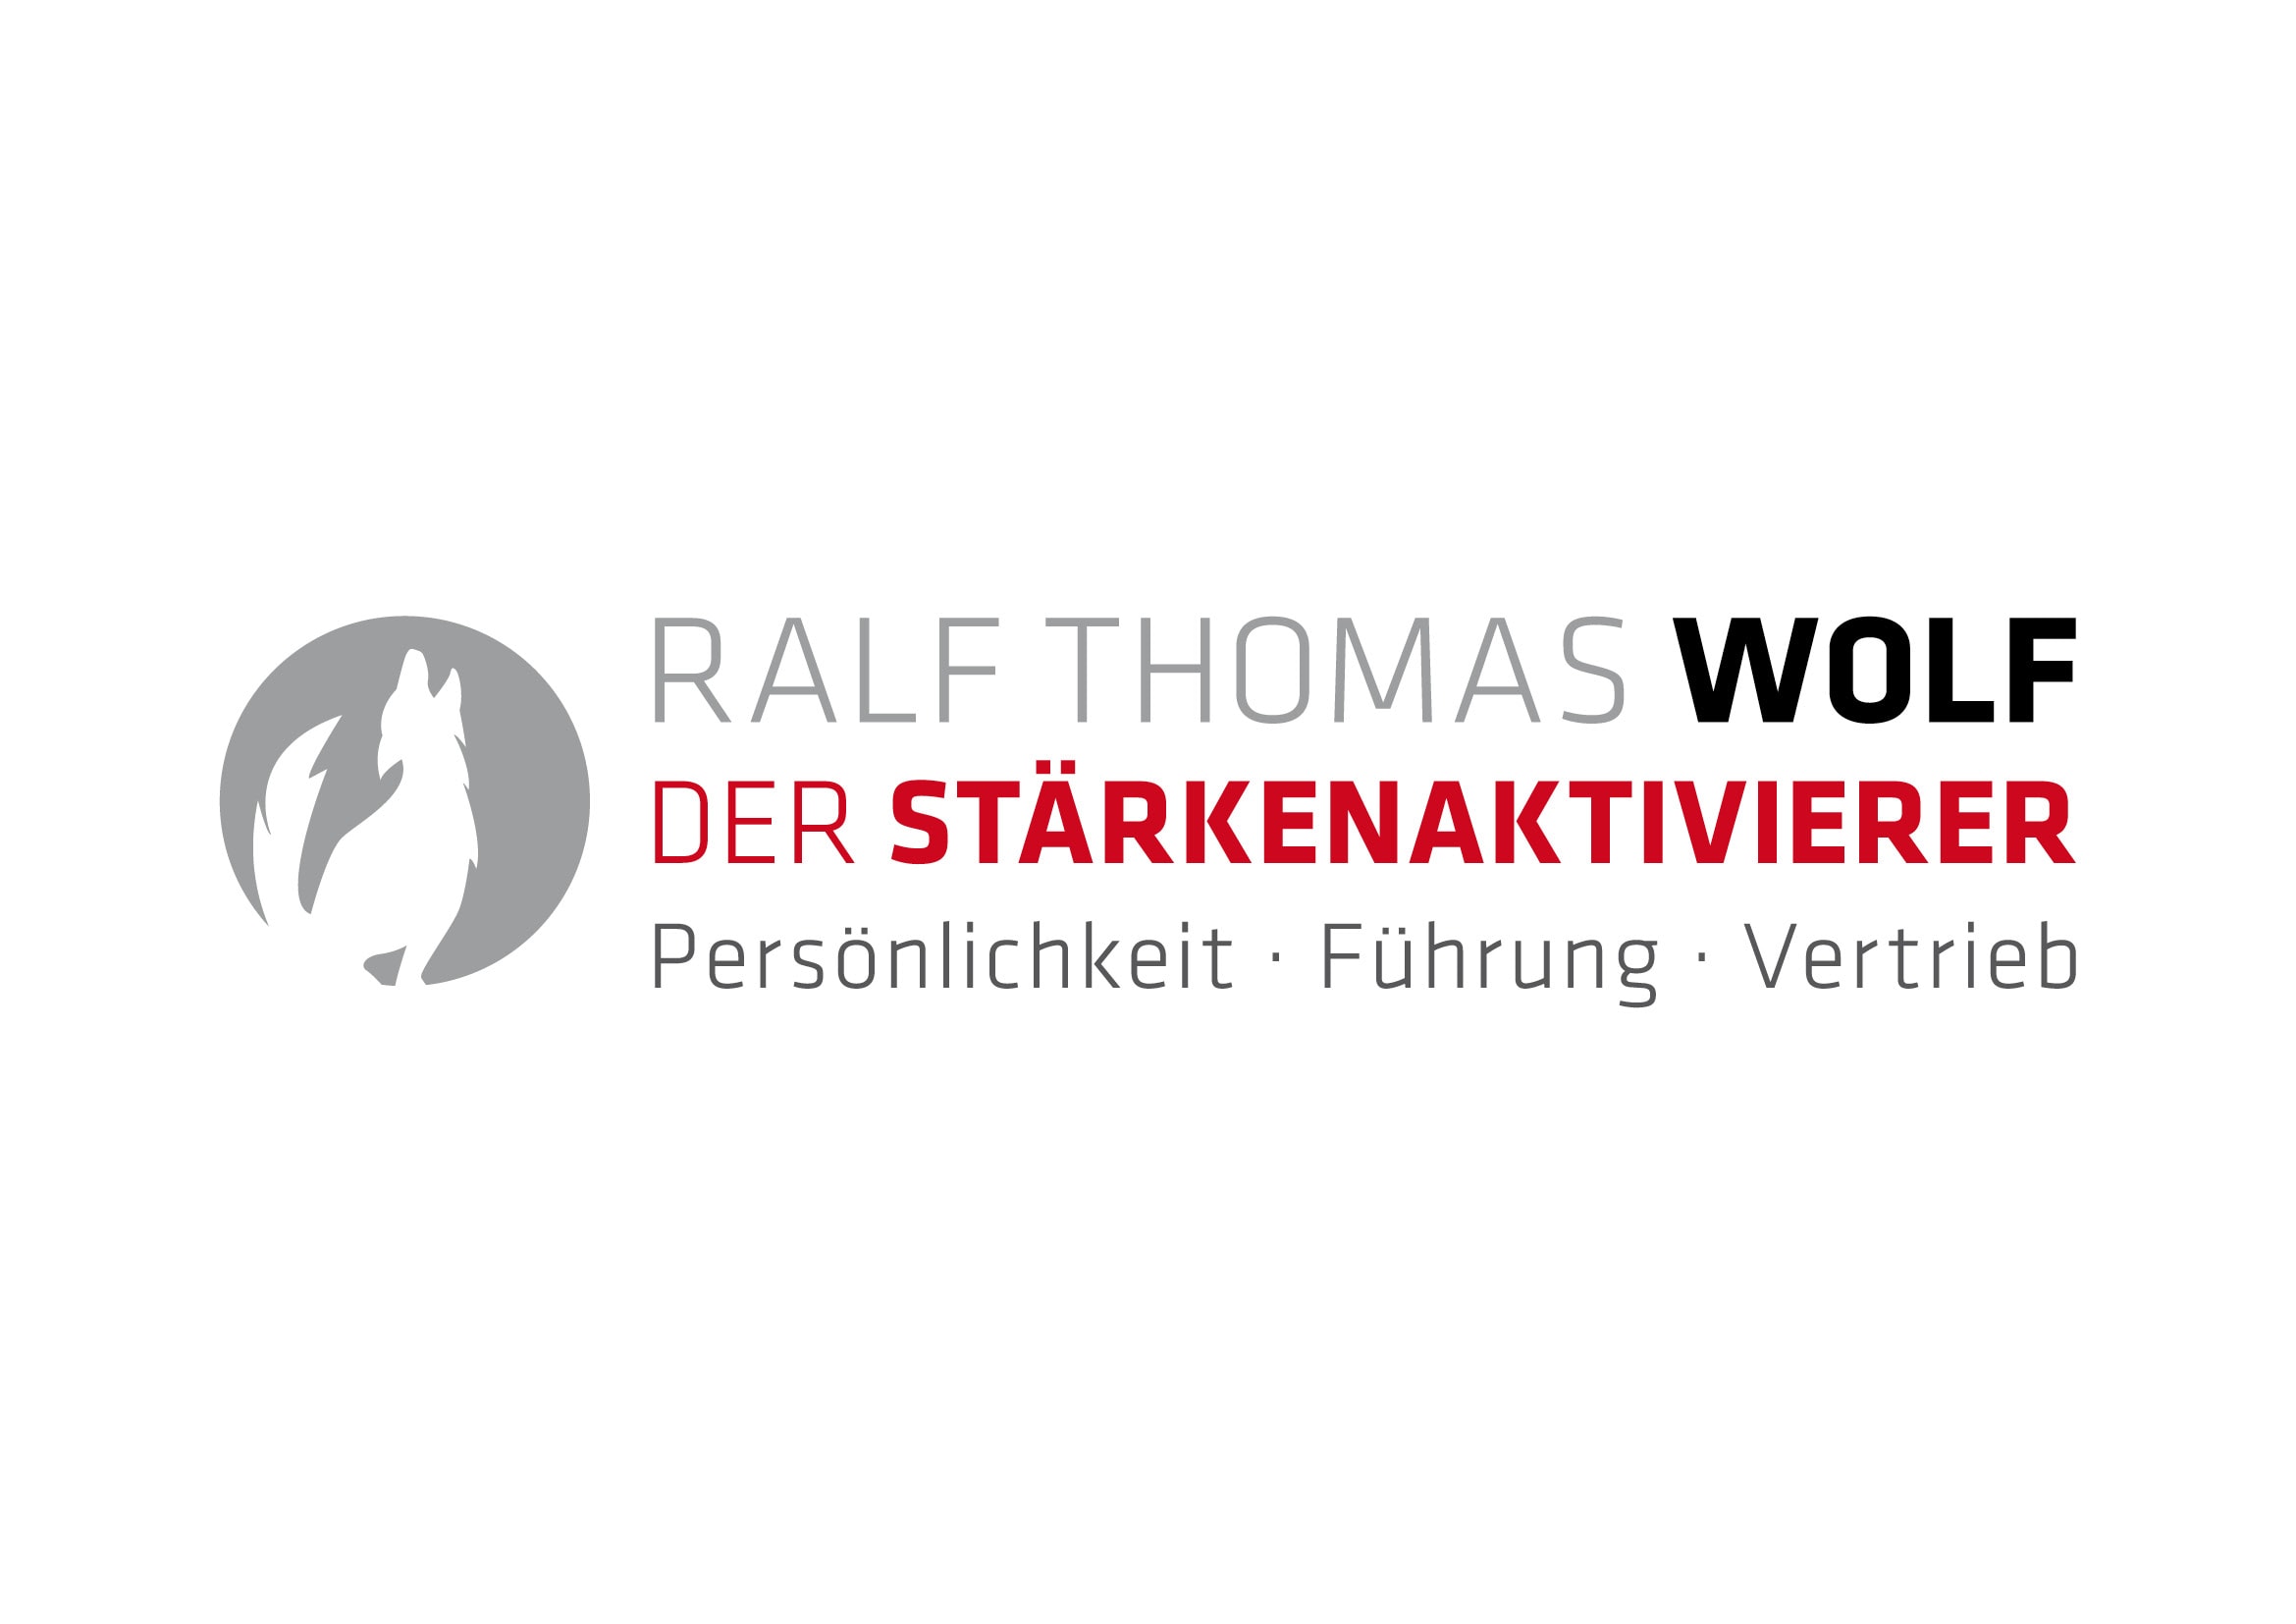 Logo Entwicklung und Programmierung der Homepage „Der Stärkenaktivierer“ für Trainer und Coach Ralf Thomas Wolf durch Grafik-Designer Ronald Wissler